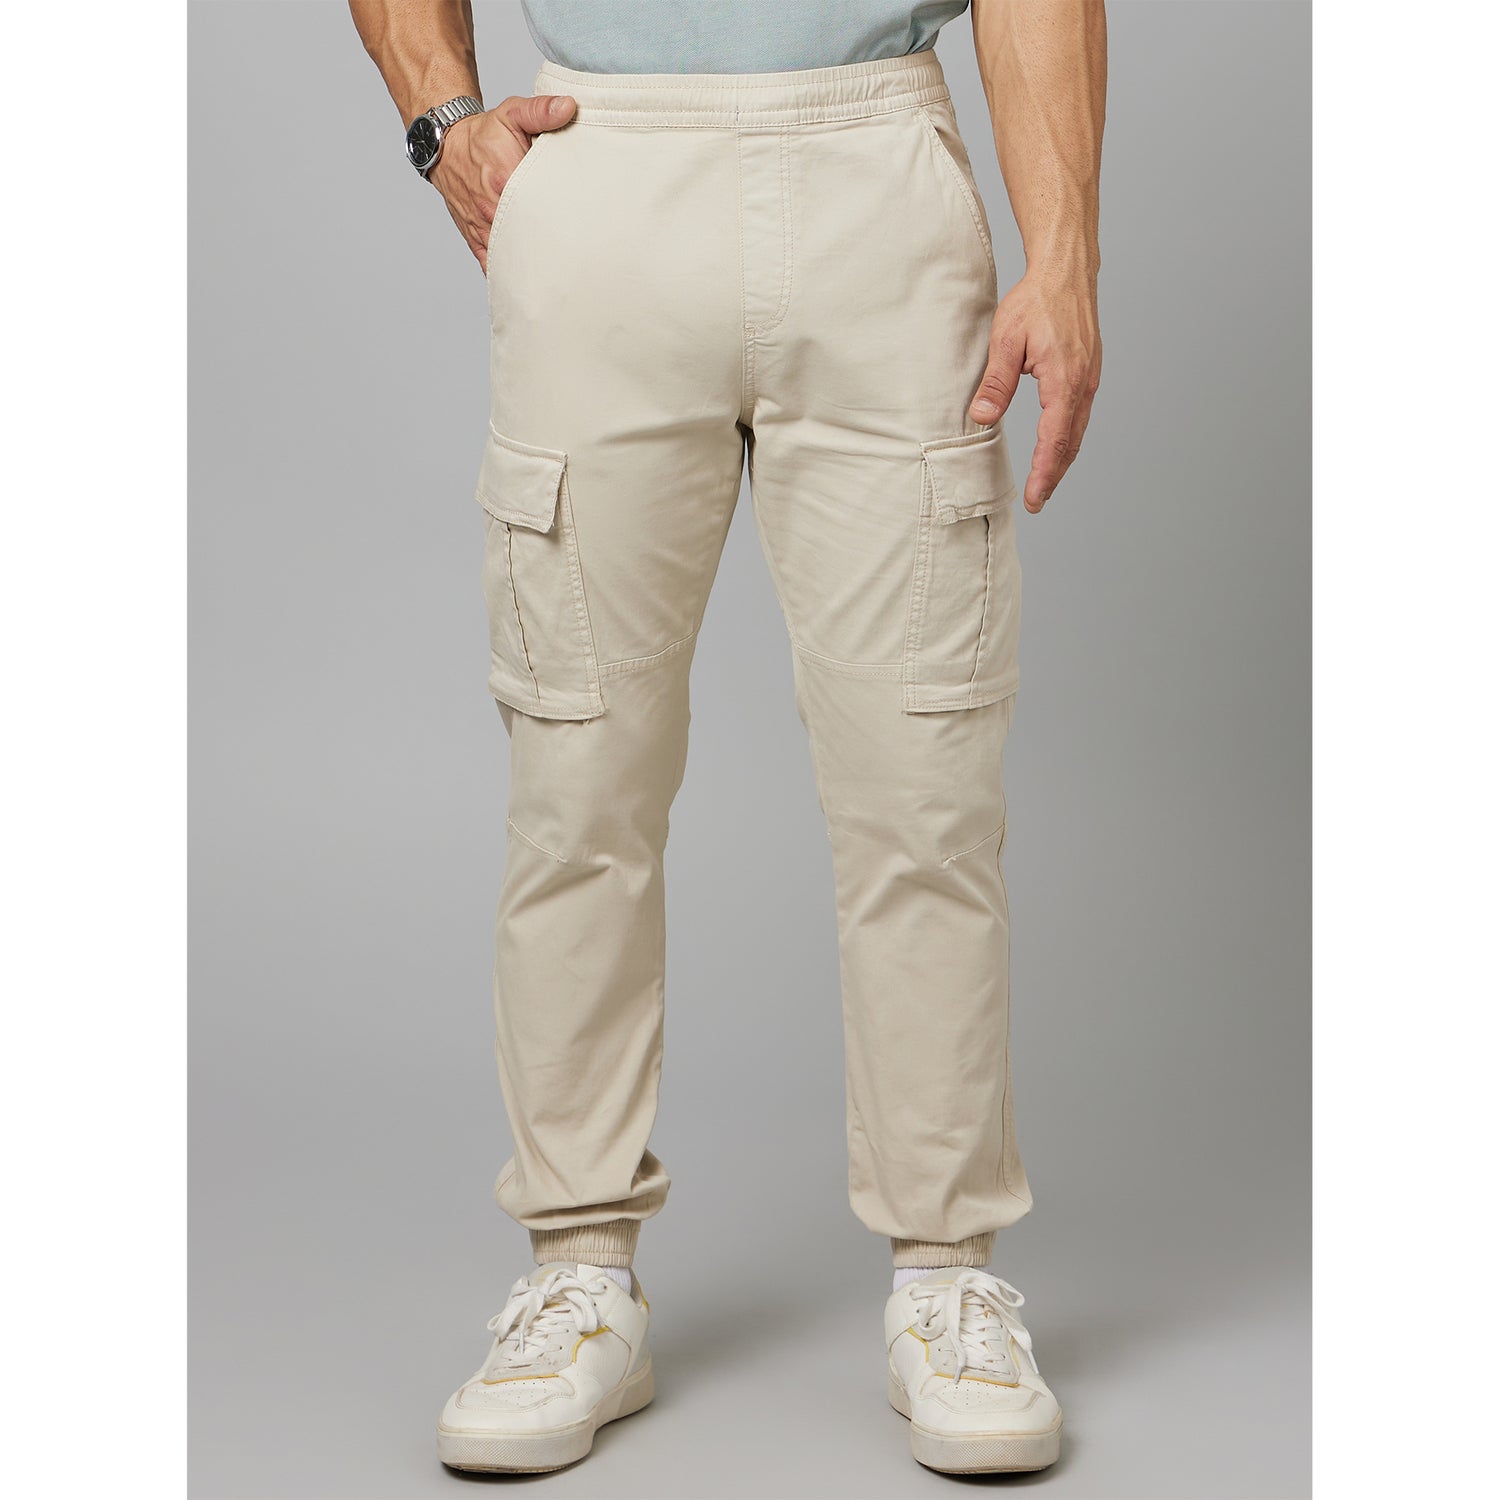 Beige Mid Rise Plain Cotton Slim Fit Cargos Trousers (DOCAR)